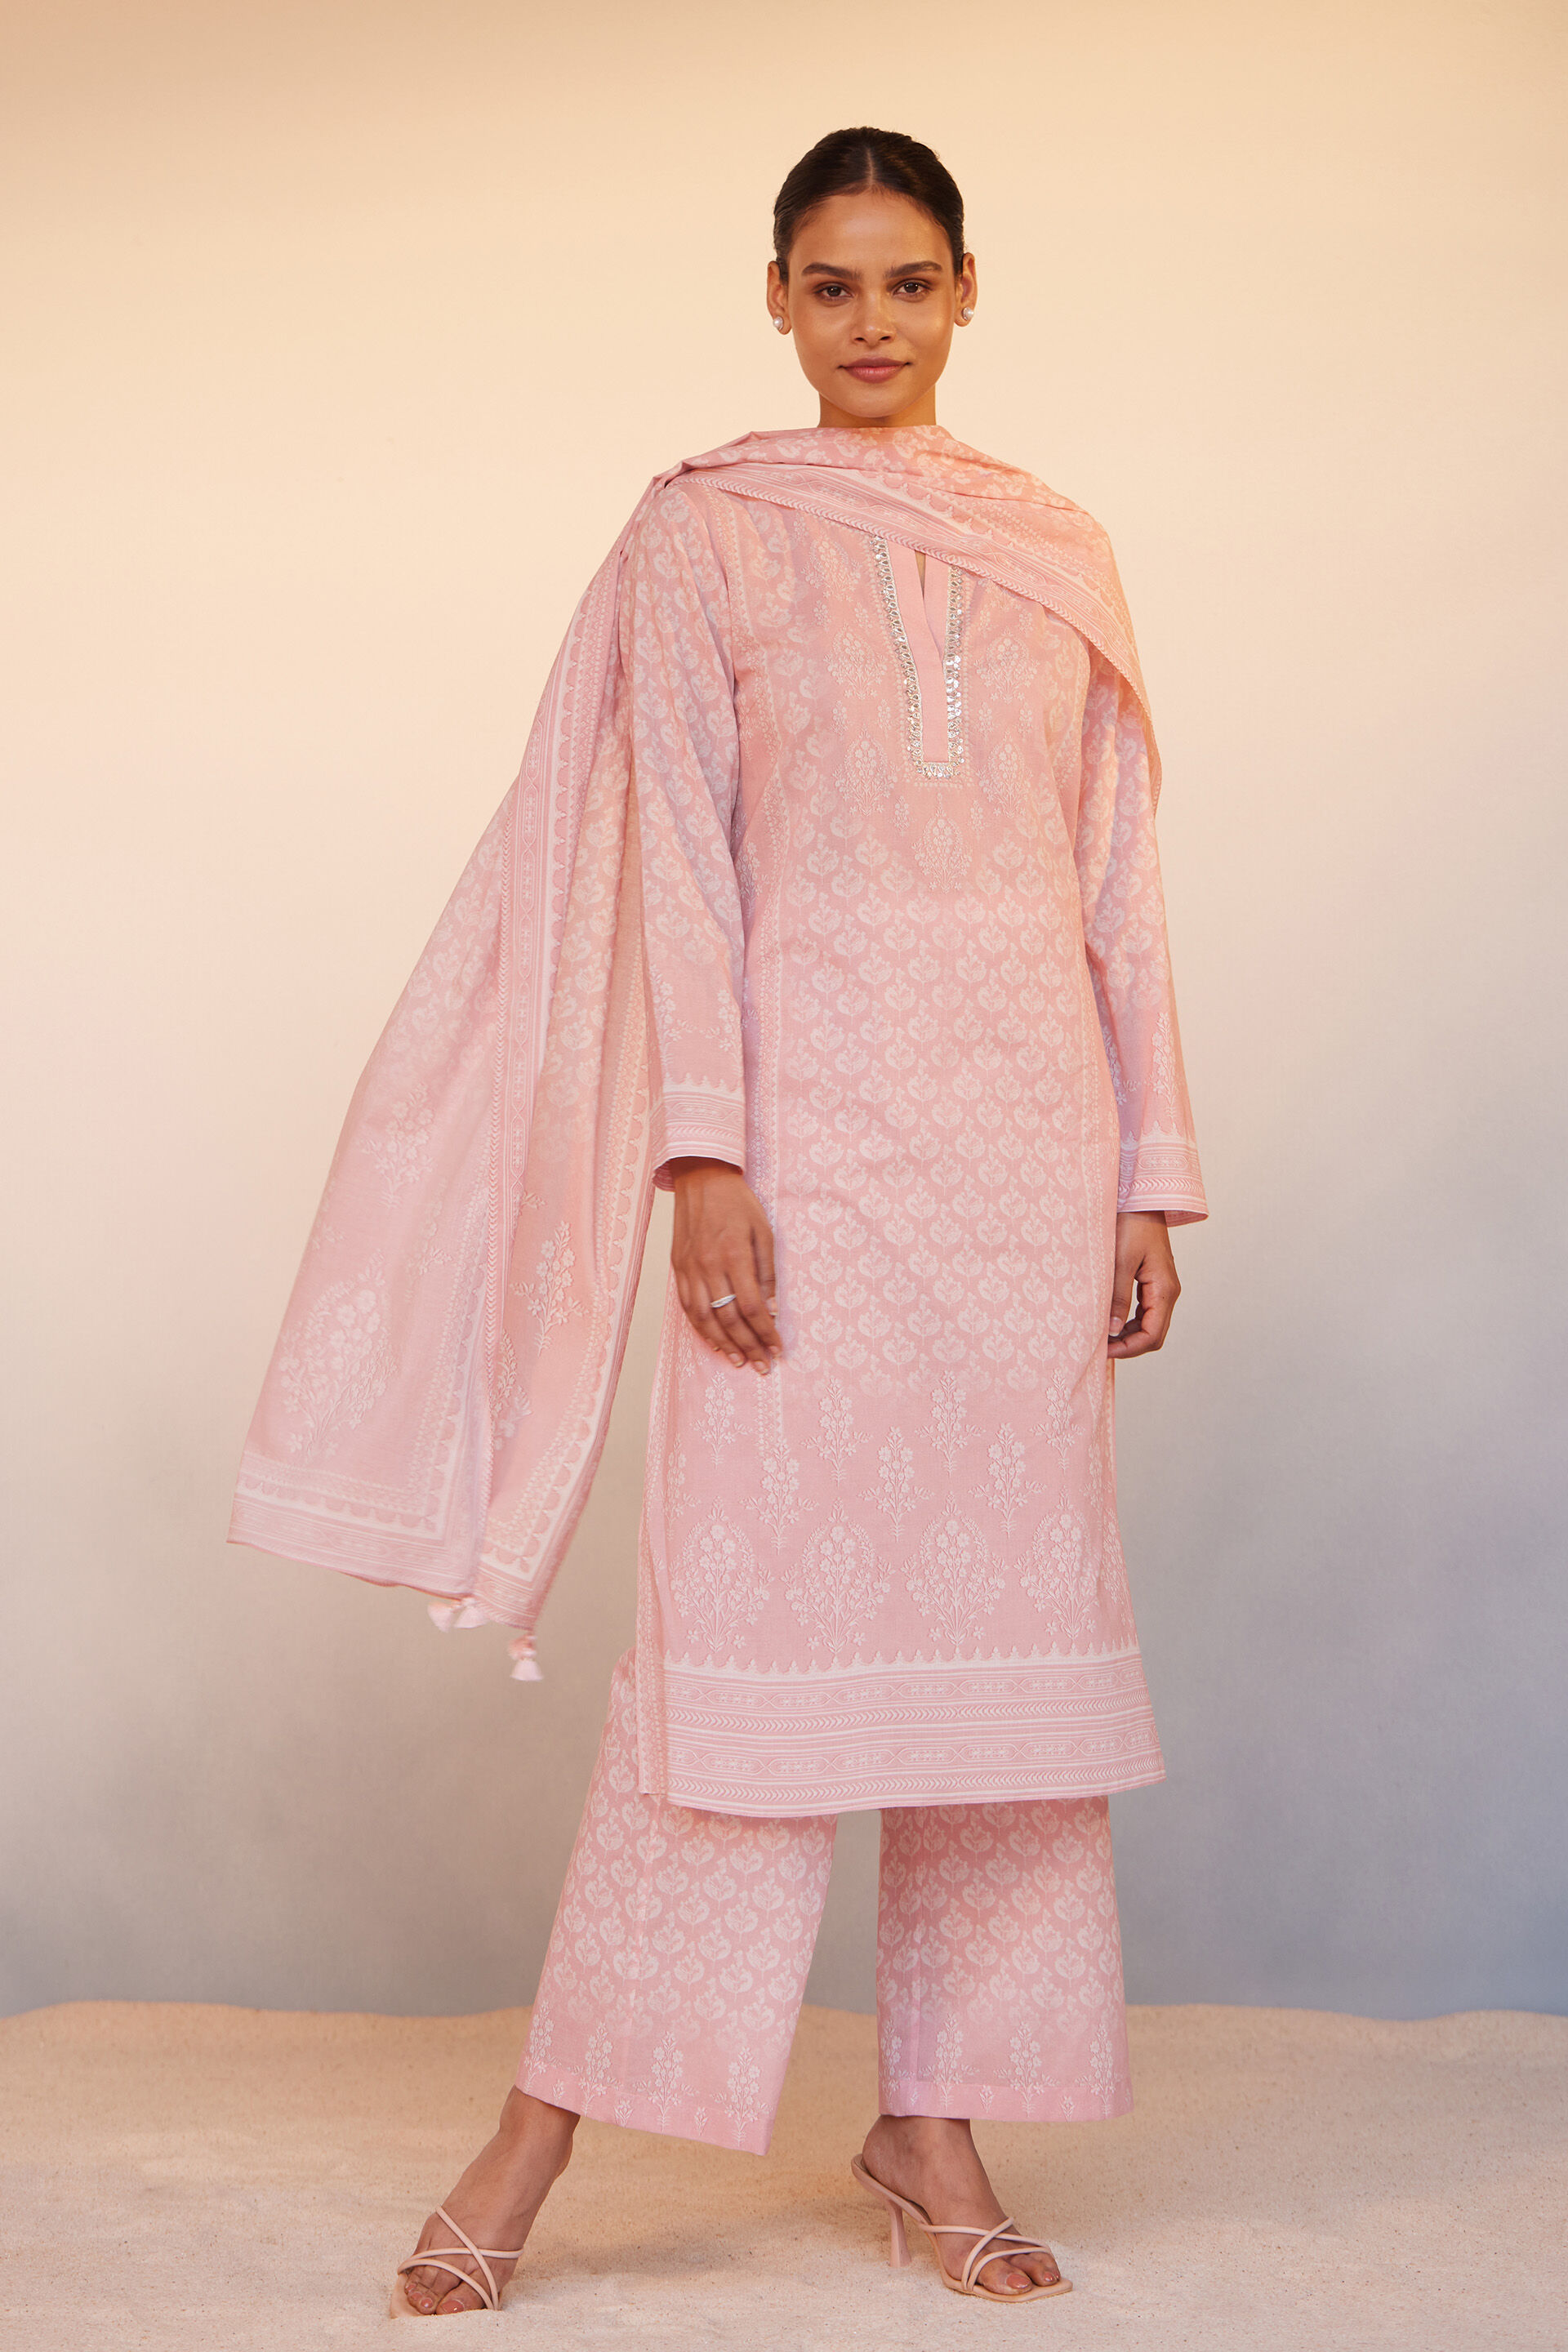 indian cotton salwar kameez simple kurta pant dupatta pakistani suit for  women | eBay